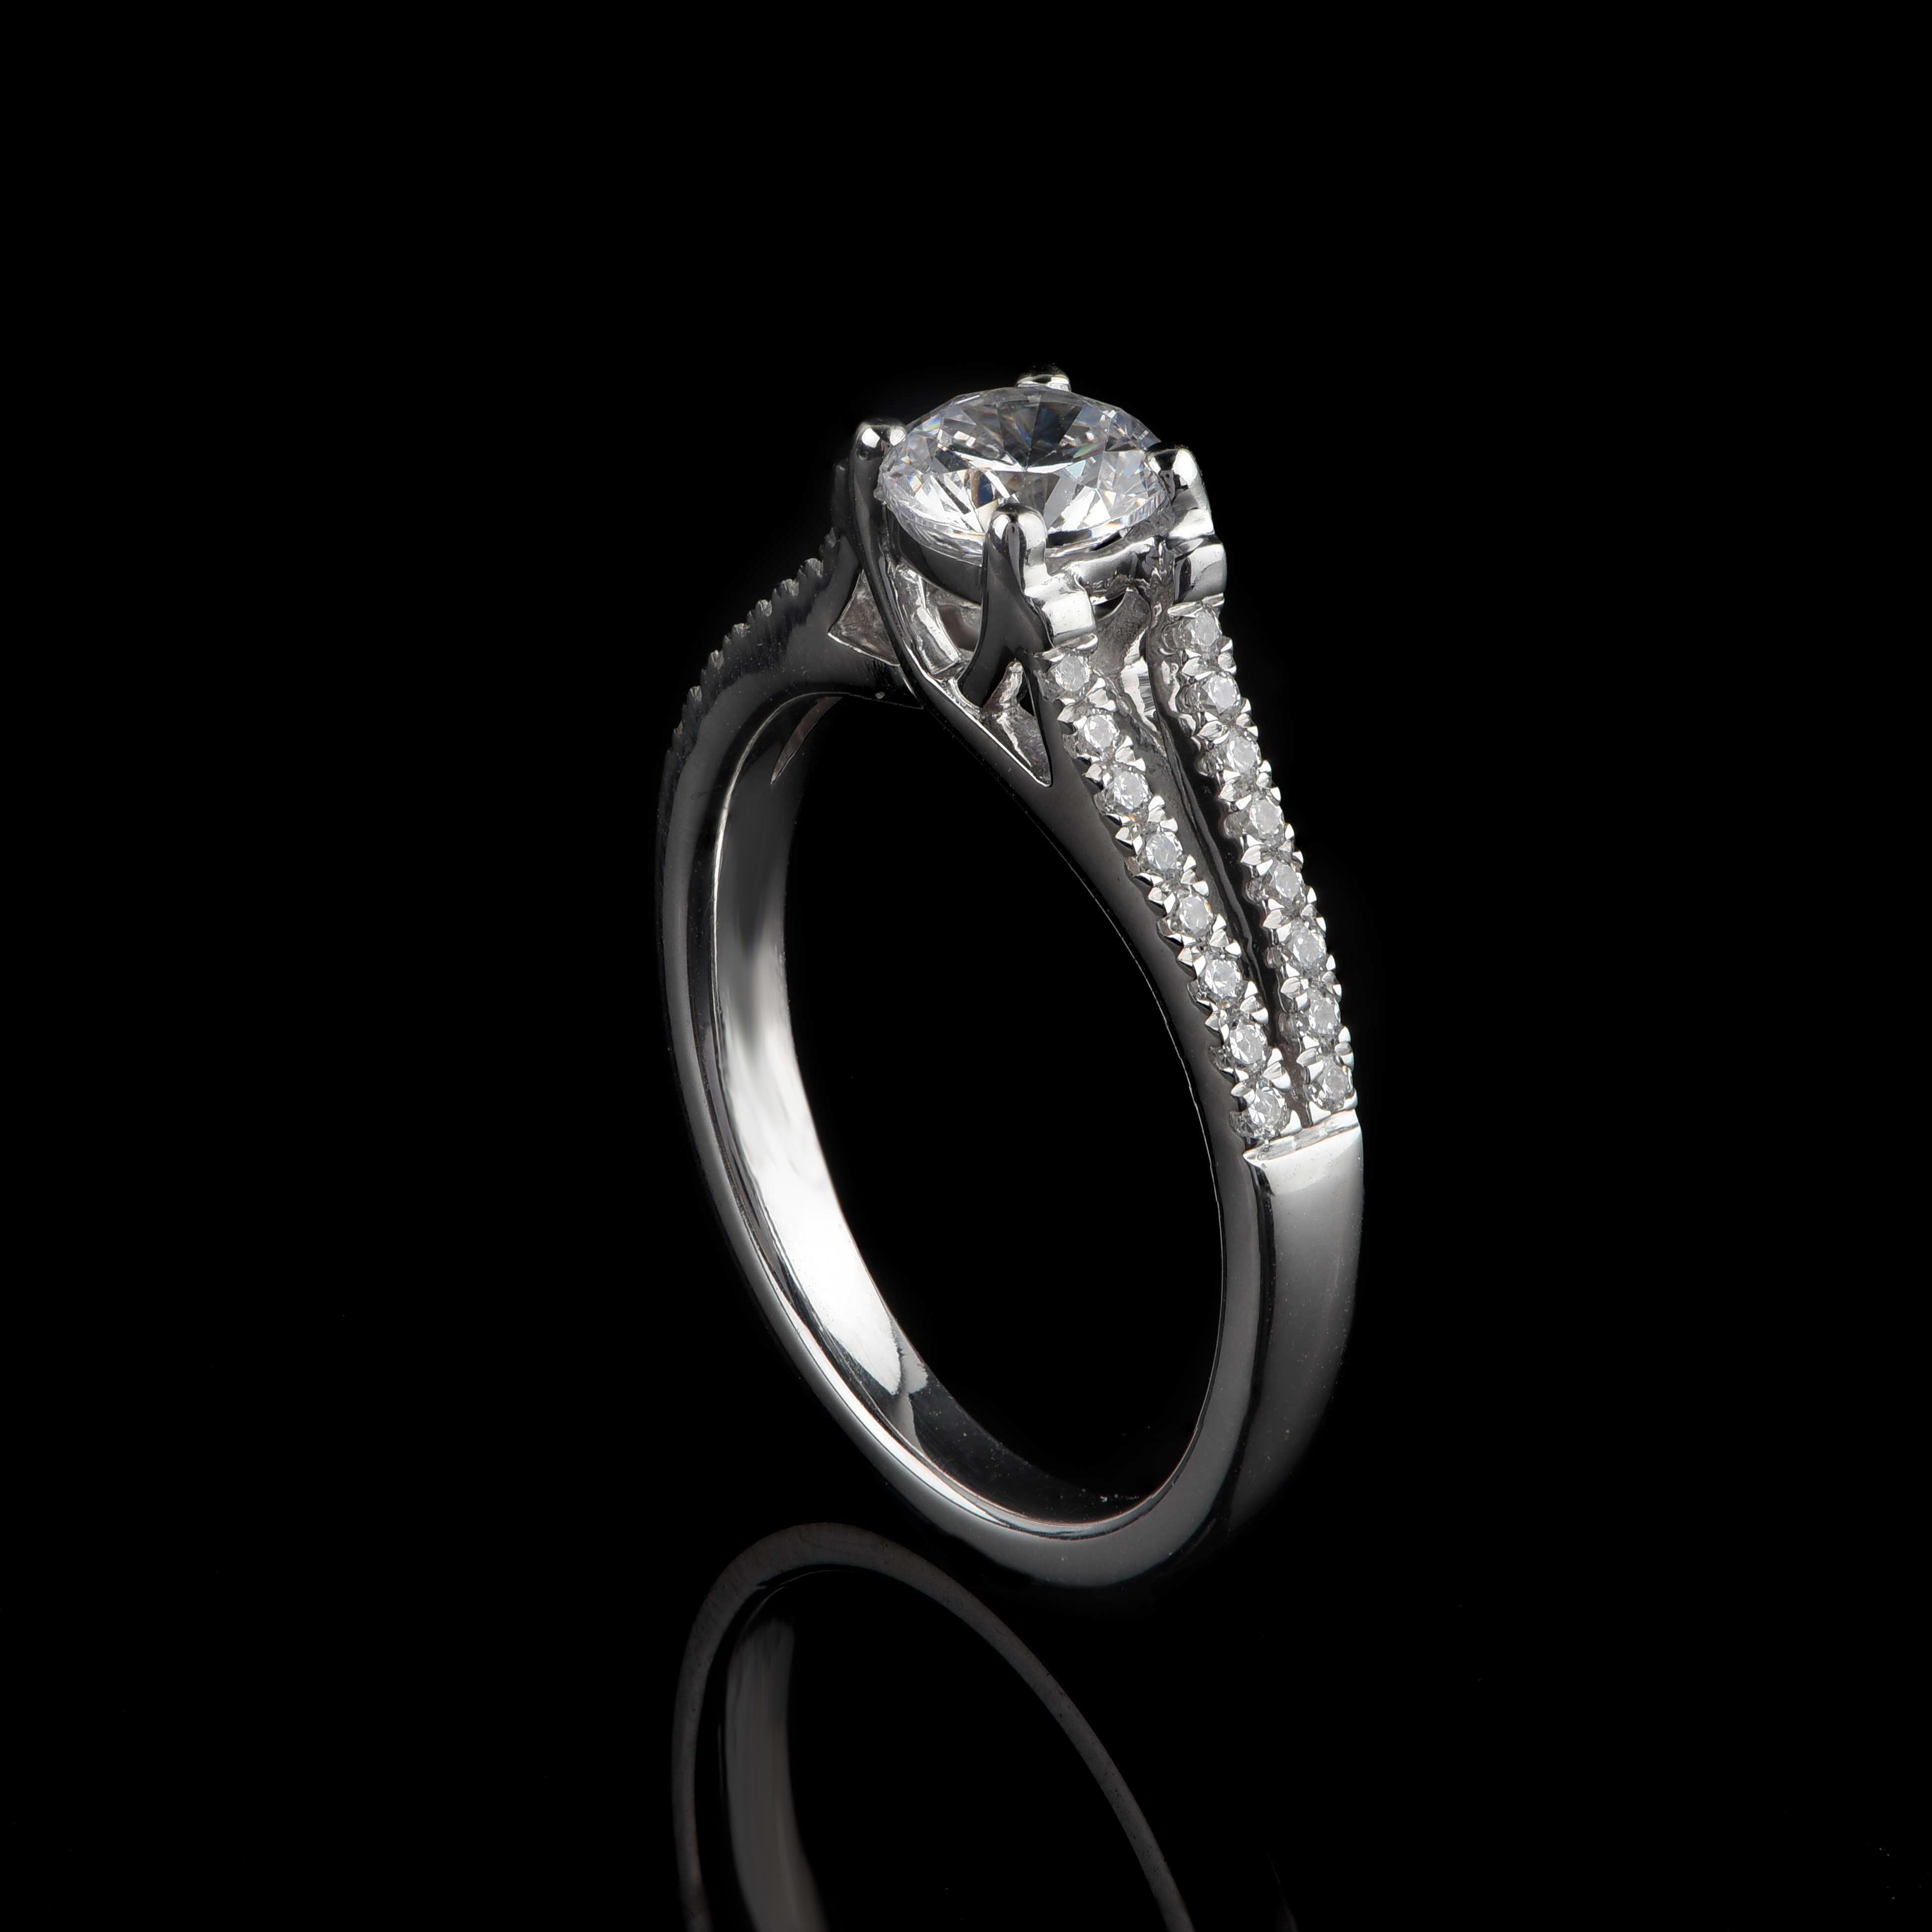 Cette bague de mariage à tige fendue est ornée de 32 diamants taille brillant et d'une pierre centrale certifiée par le GIA, sertie en griffe. Exquisément fabriqué à la main par nos habiles artisans en or blanc 18 carats. Les diamants sont classés